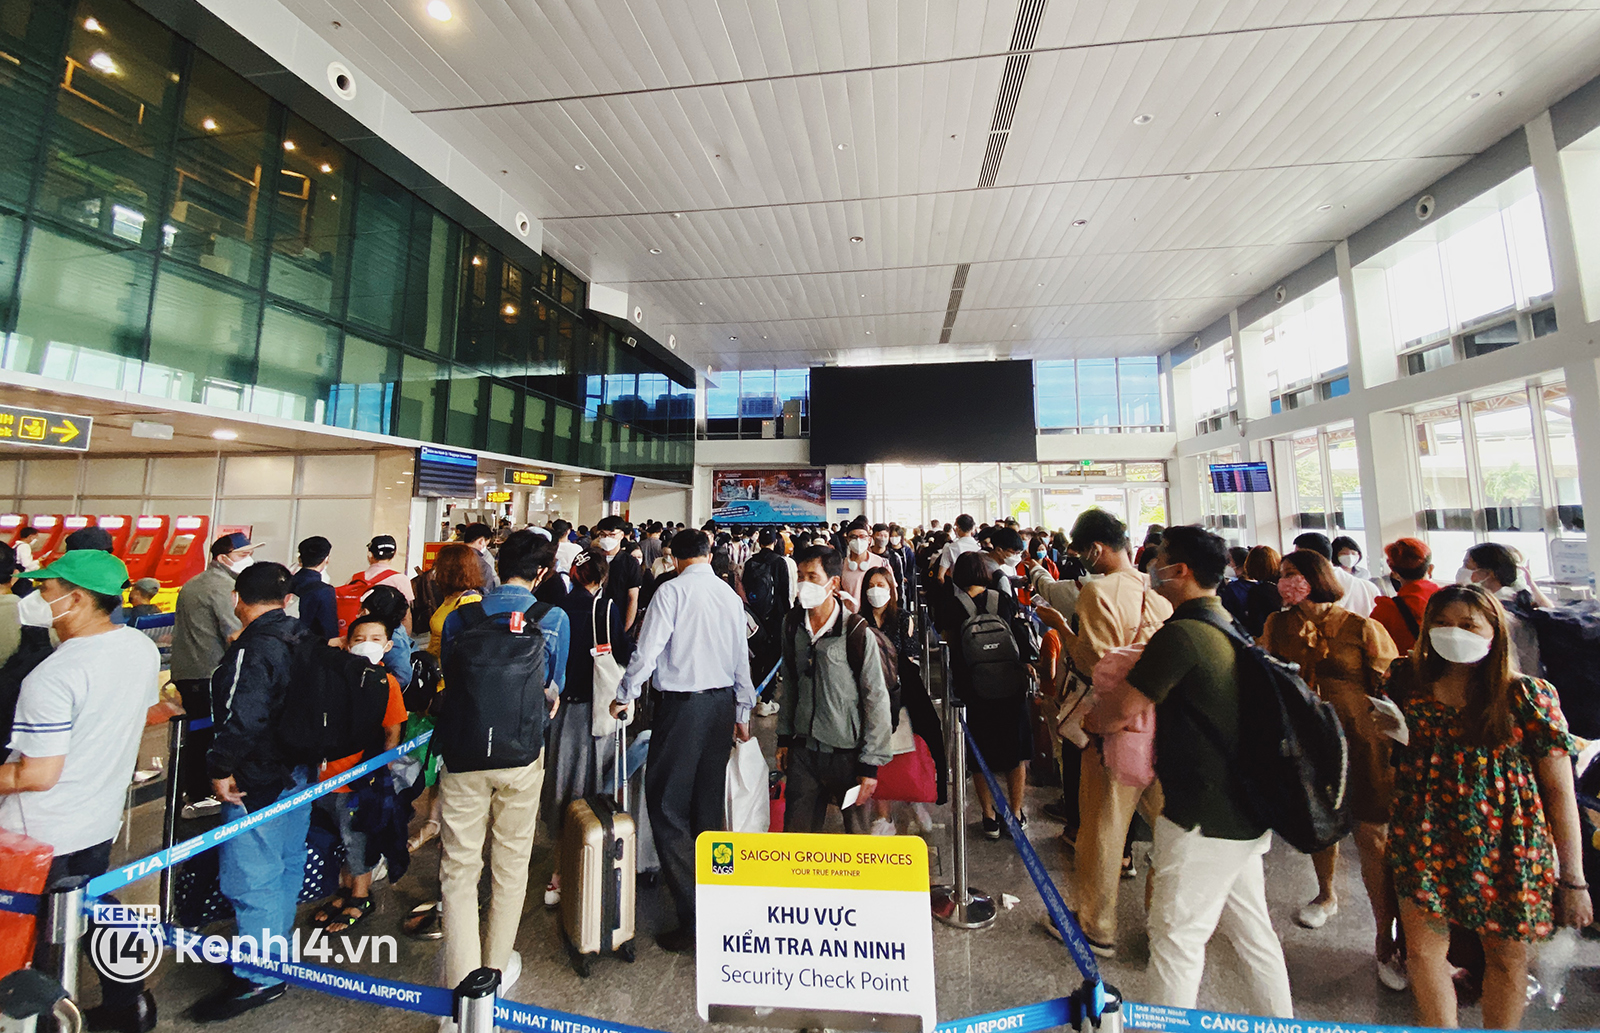 Ảnh: Sân bay Tân Sơn Nhất đông nghịt, nhiều người thất lạc hành lý, xếp hàng dài chờ gọi xe - Ảnh 4.